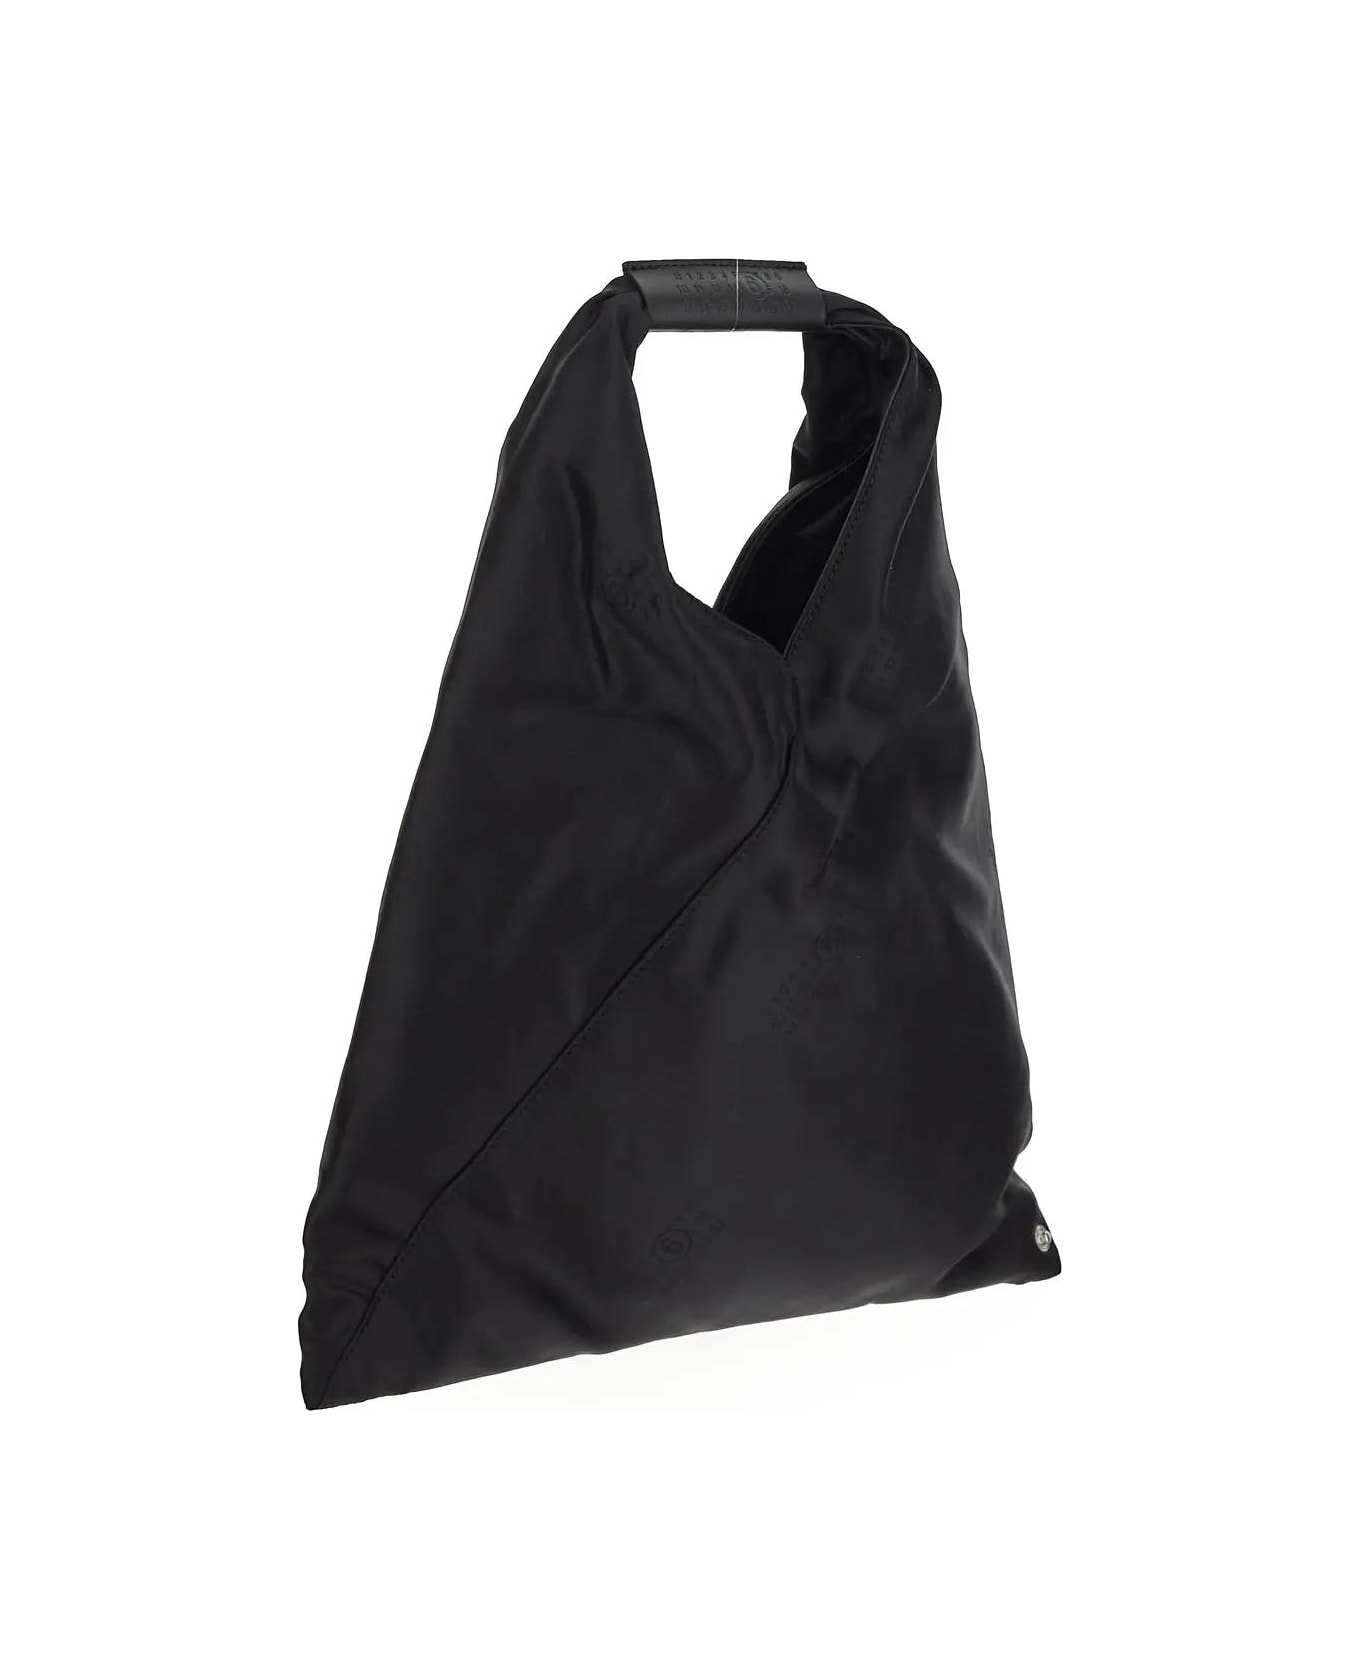 MM6 Maison Margiela Japanese Handbag - Black